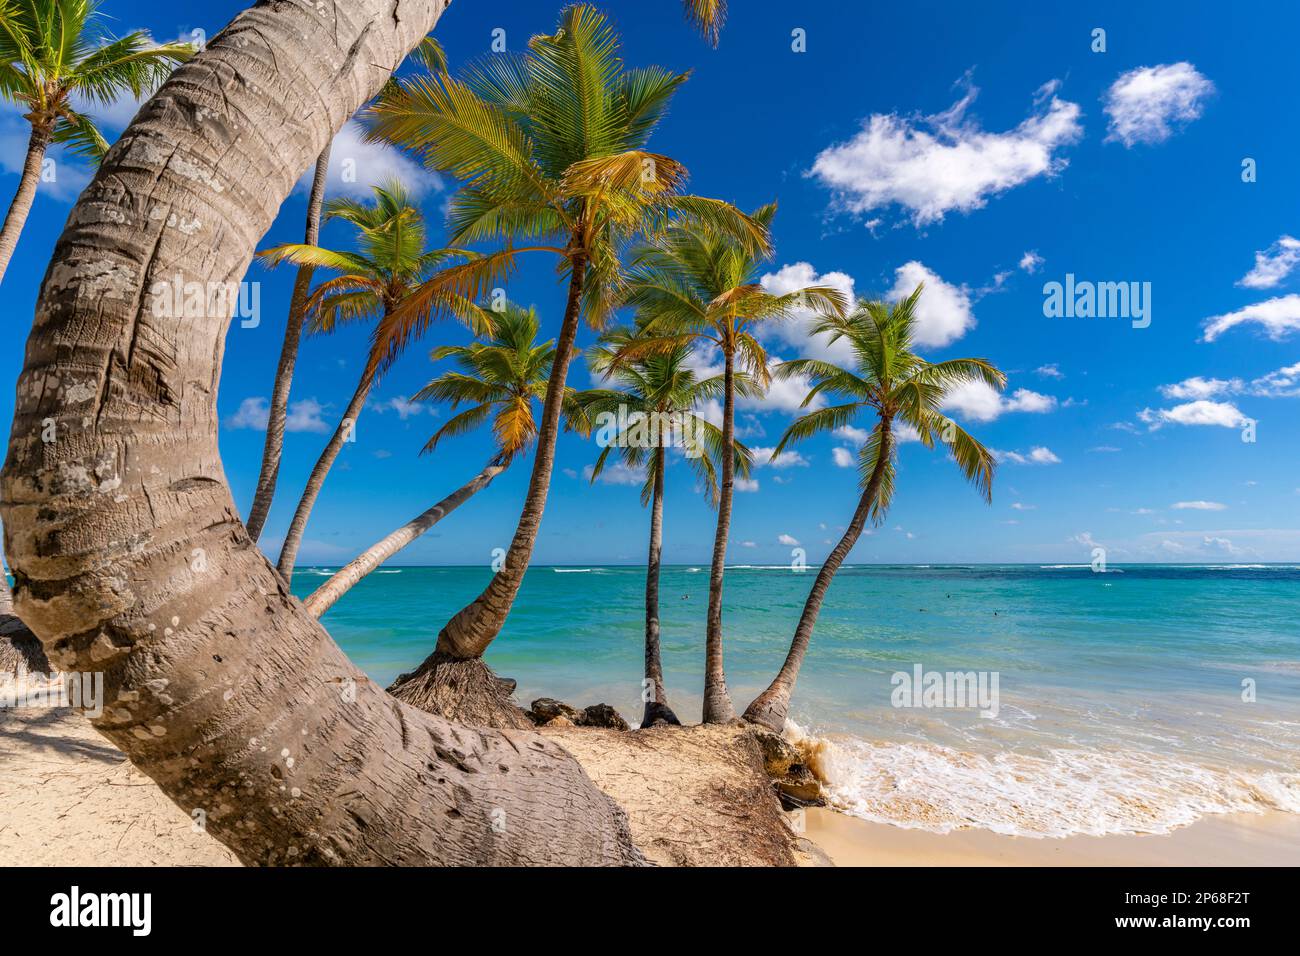 Vista de palmeras y mar en Playa Bávaro, Punta Cana, República Dominicana, Indias Occidentales, Caribe, Centroamérica Foto de stock